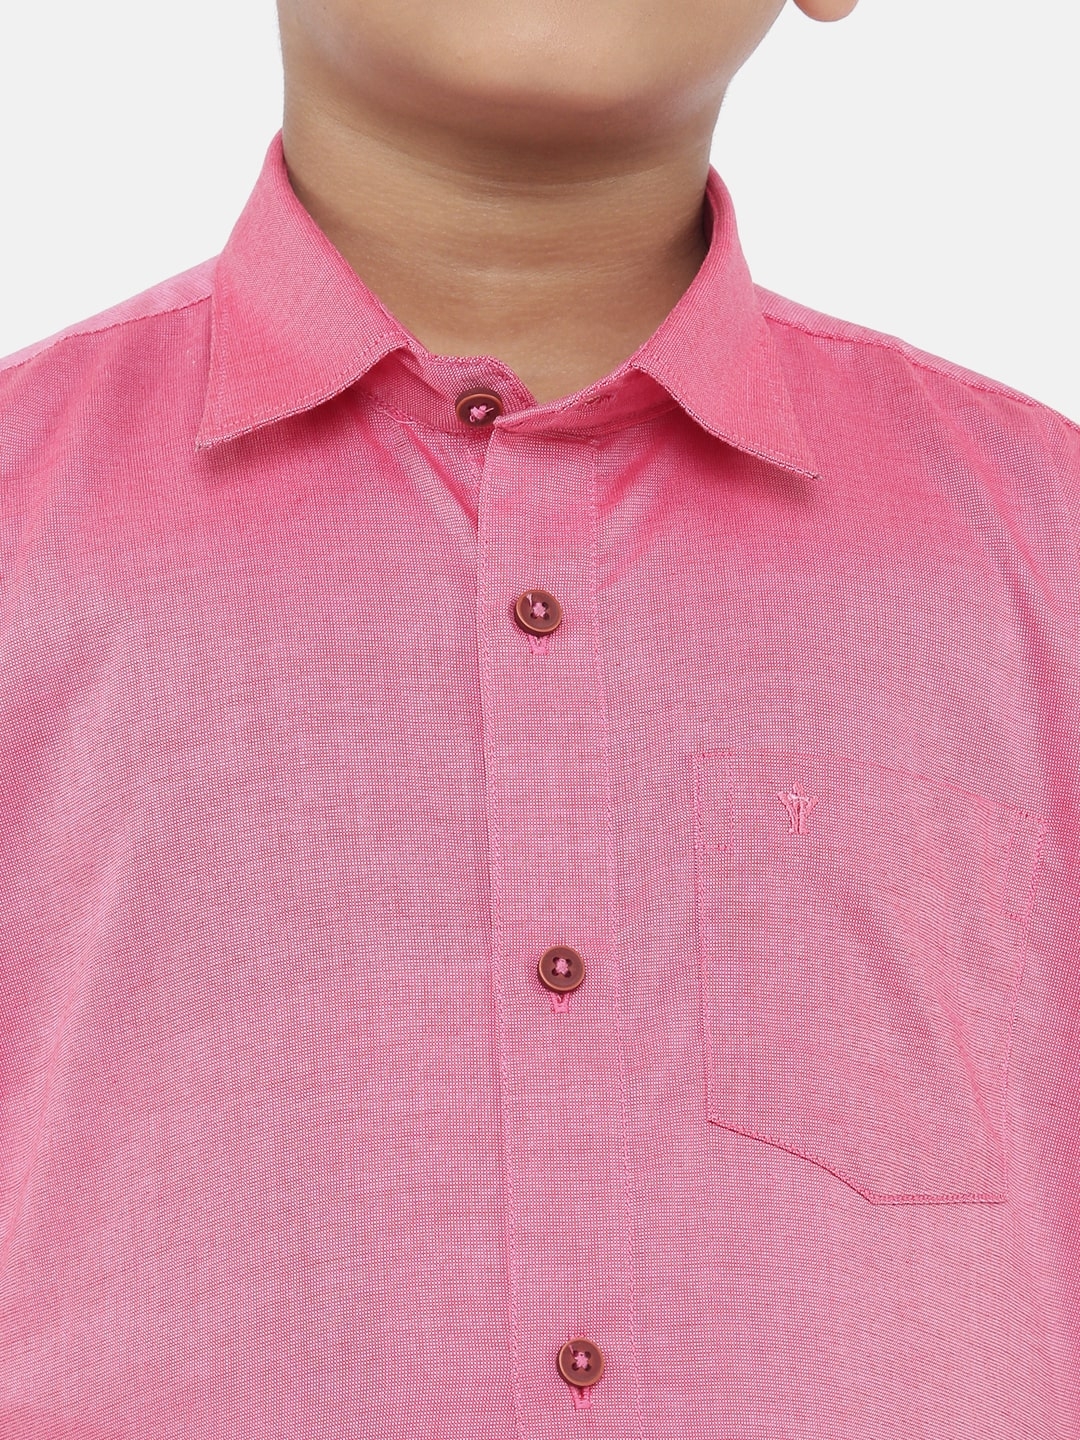 Ramraj Cotton | Ramraj Boys Pink Solid Shirt with White Dhoti 3